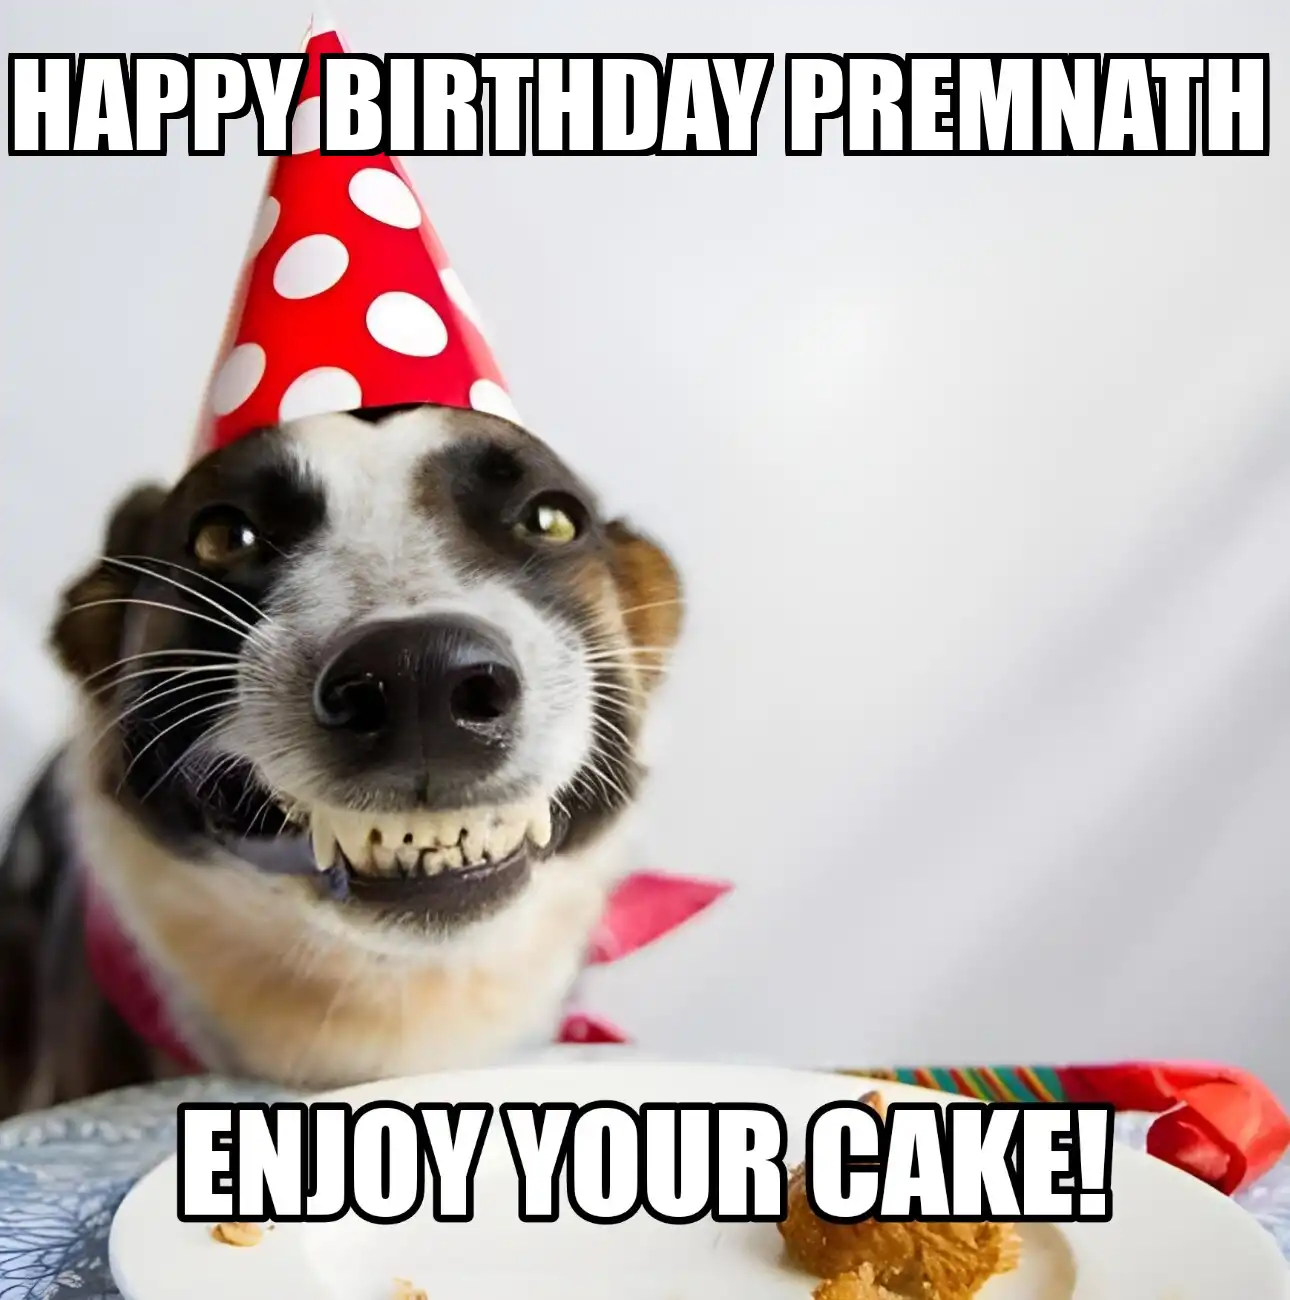 Happy Birthday Premnath Enjoy Your Cake Dog Meme